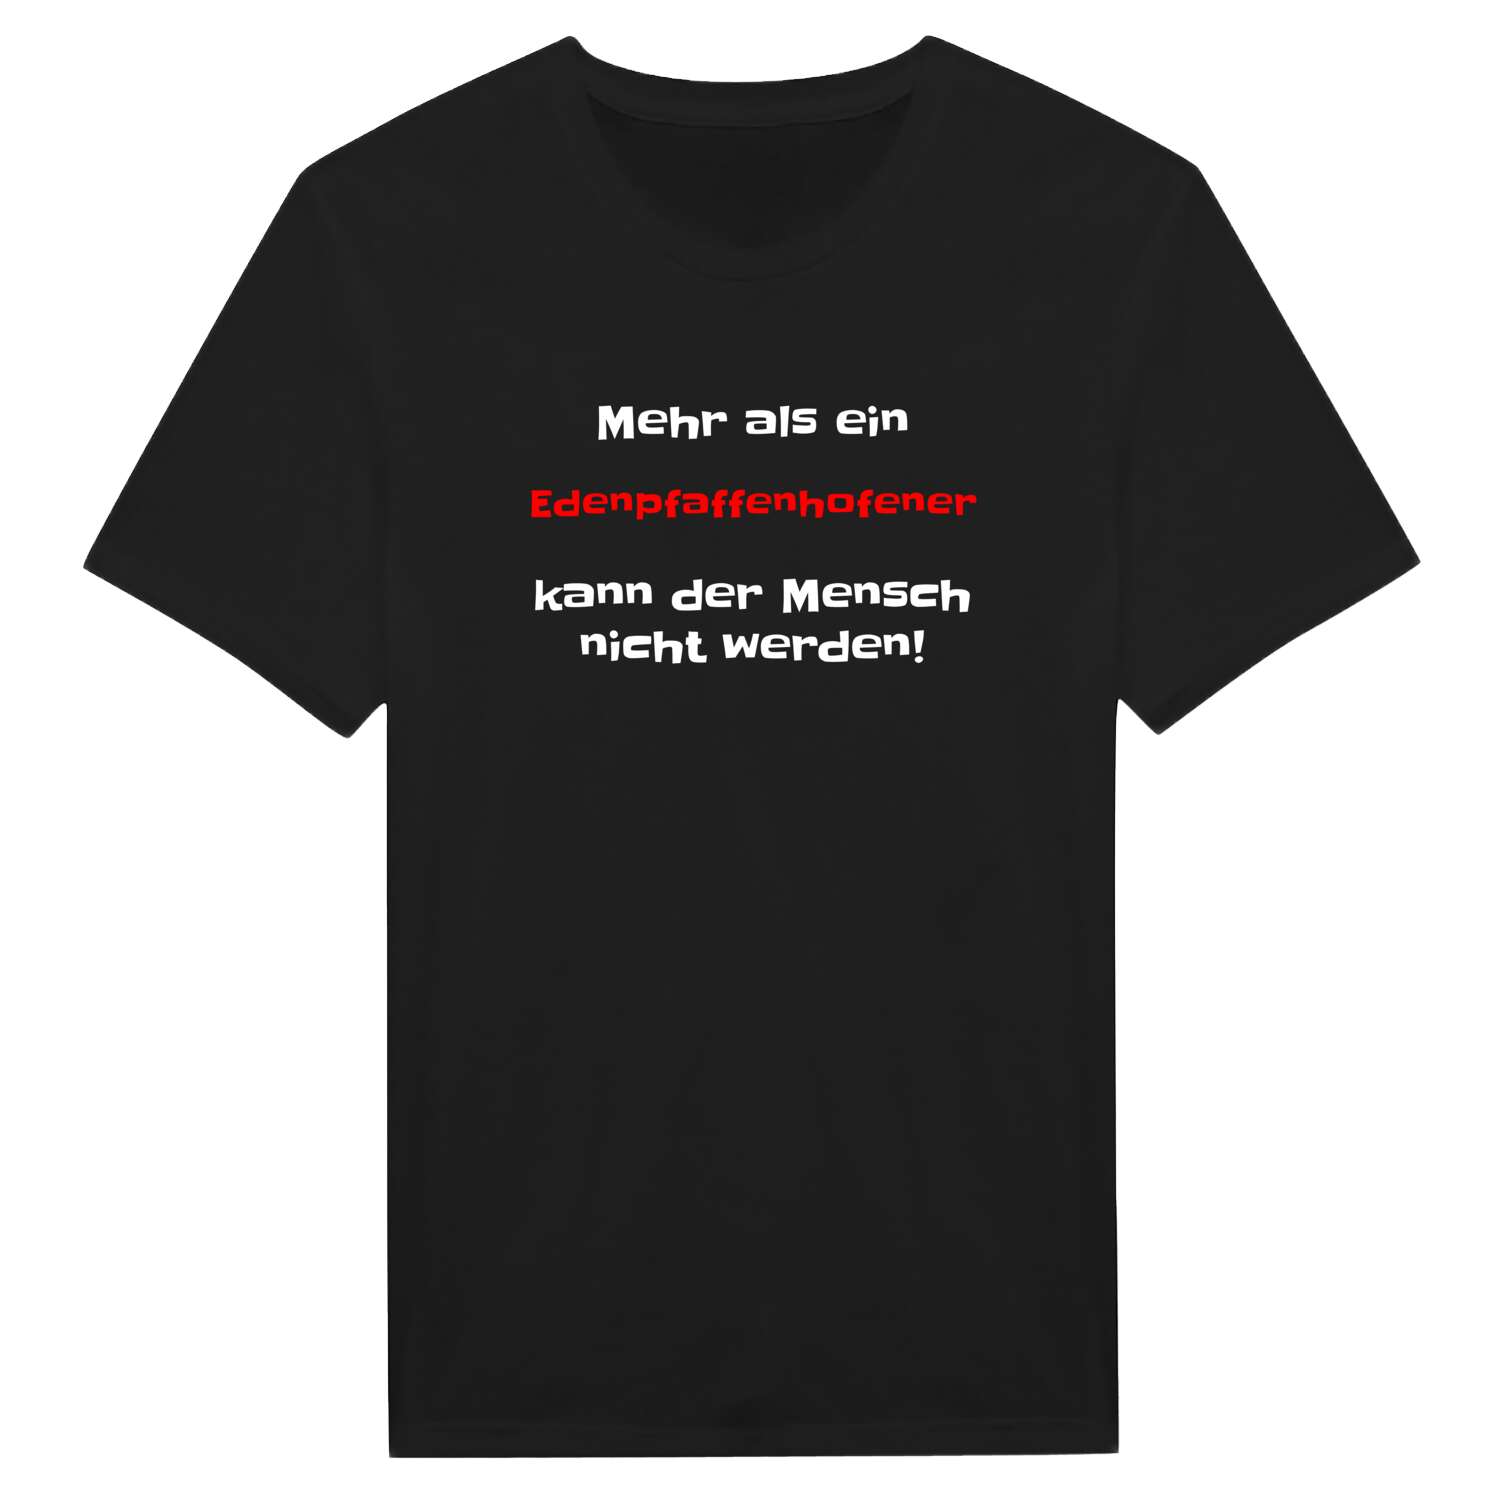 Edenpfaffenhofen T-Shirt »Mehr als ein«